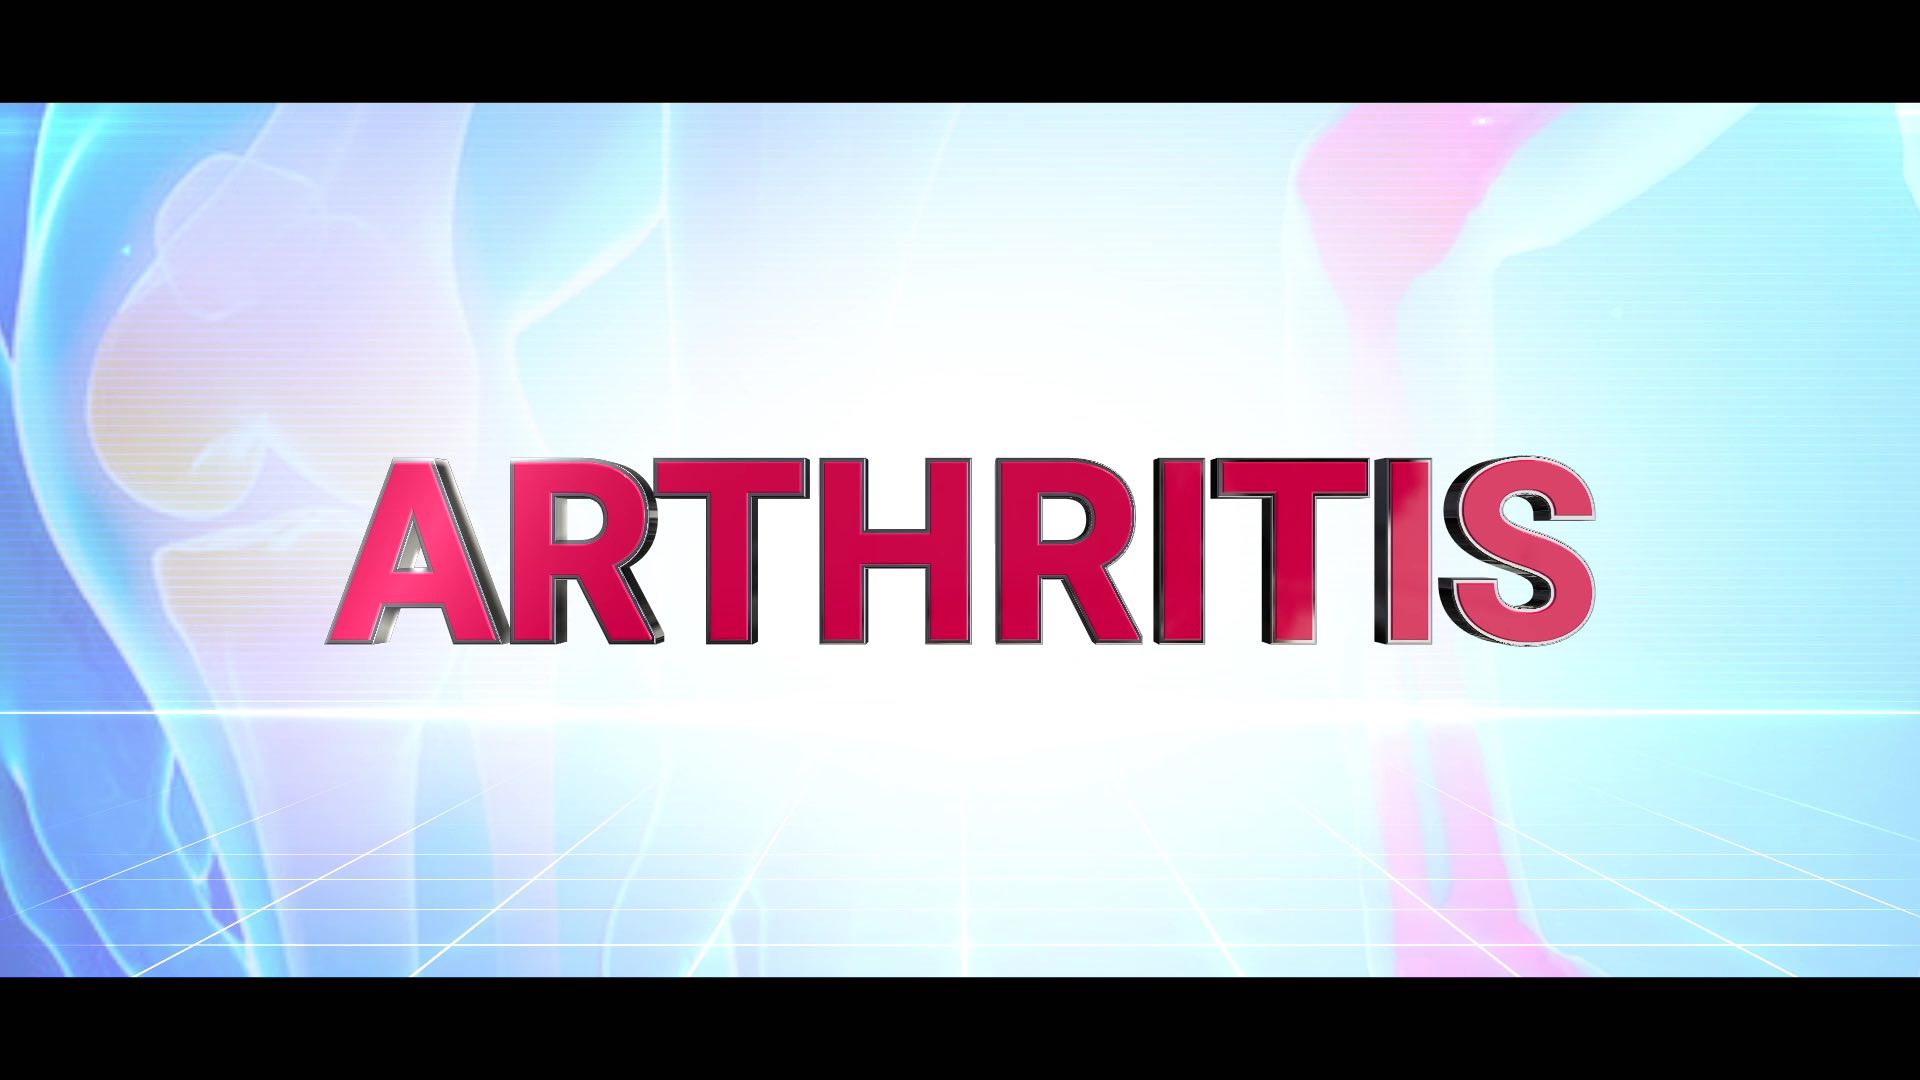 Gouty Arthritis